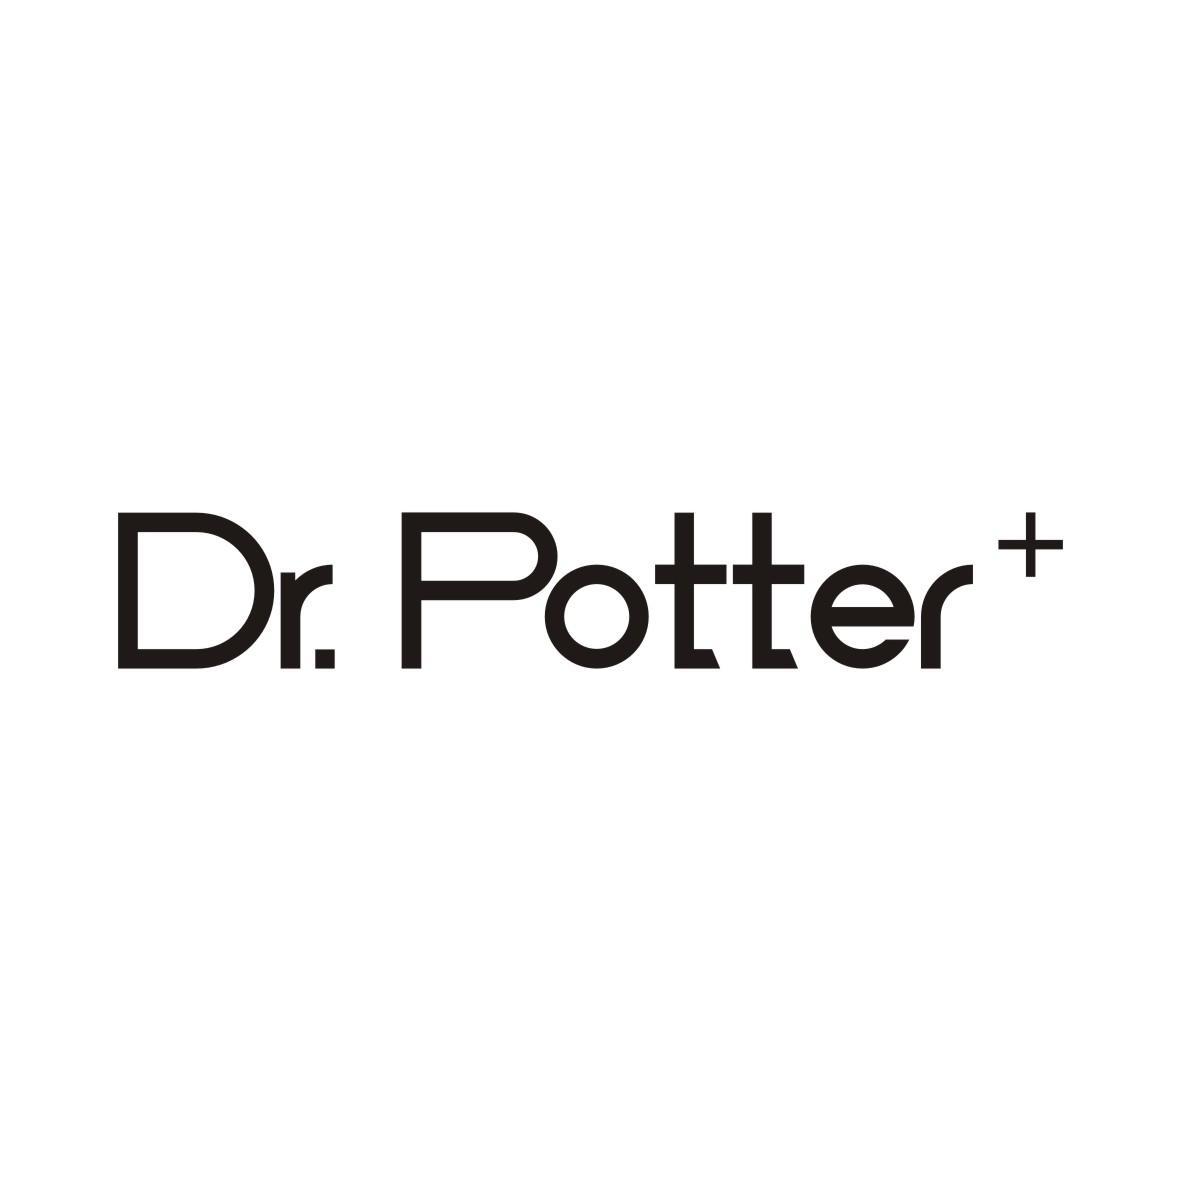 DR. POTTER+